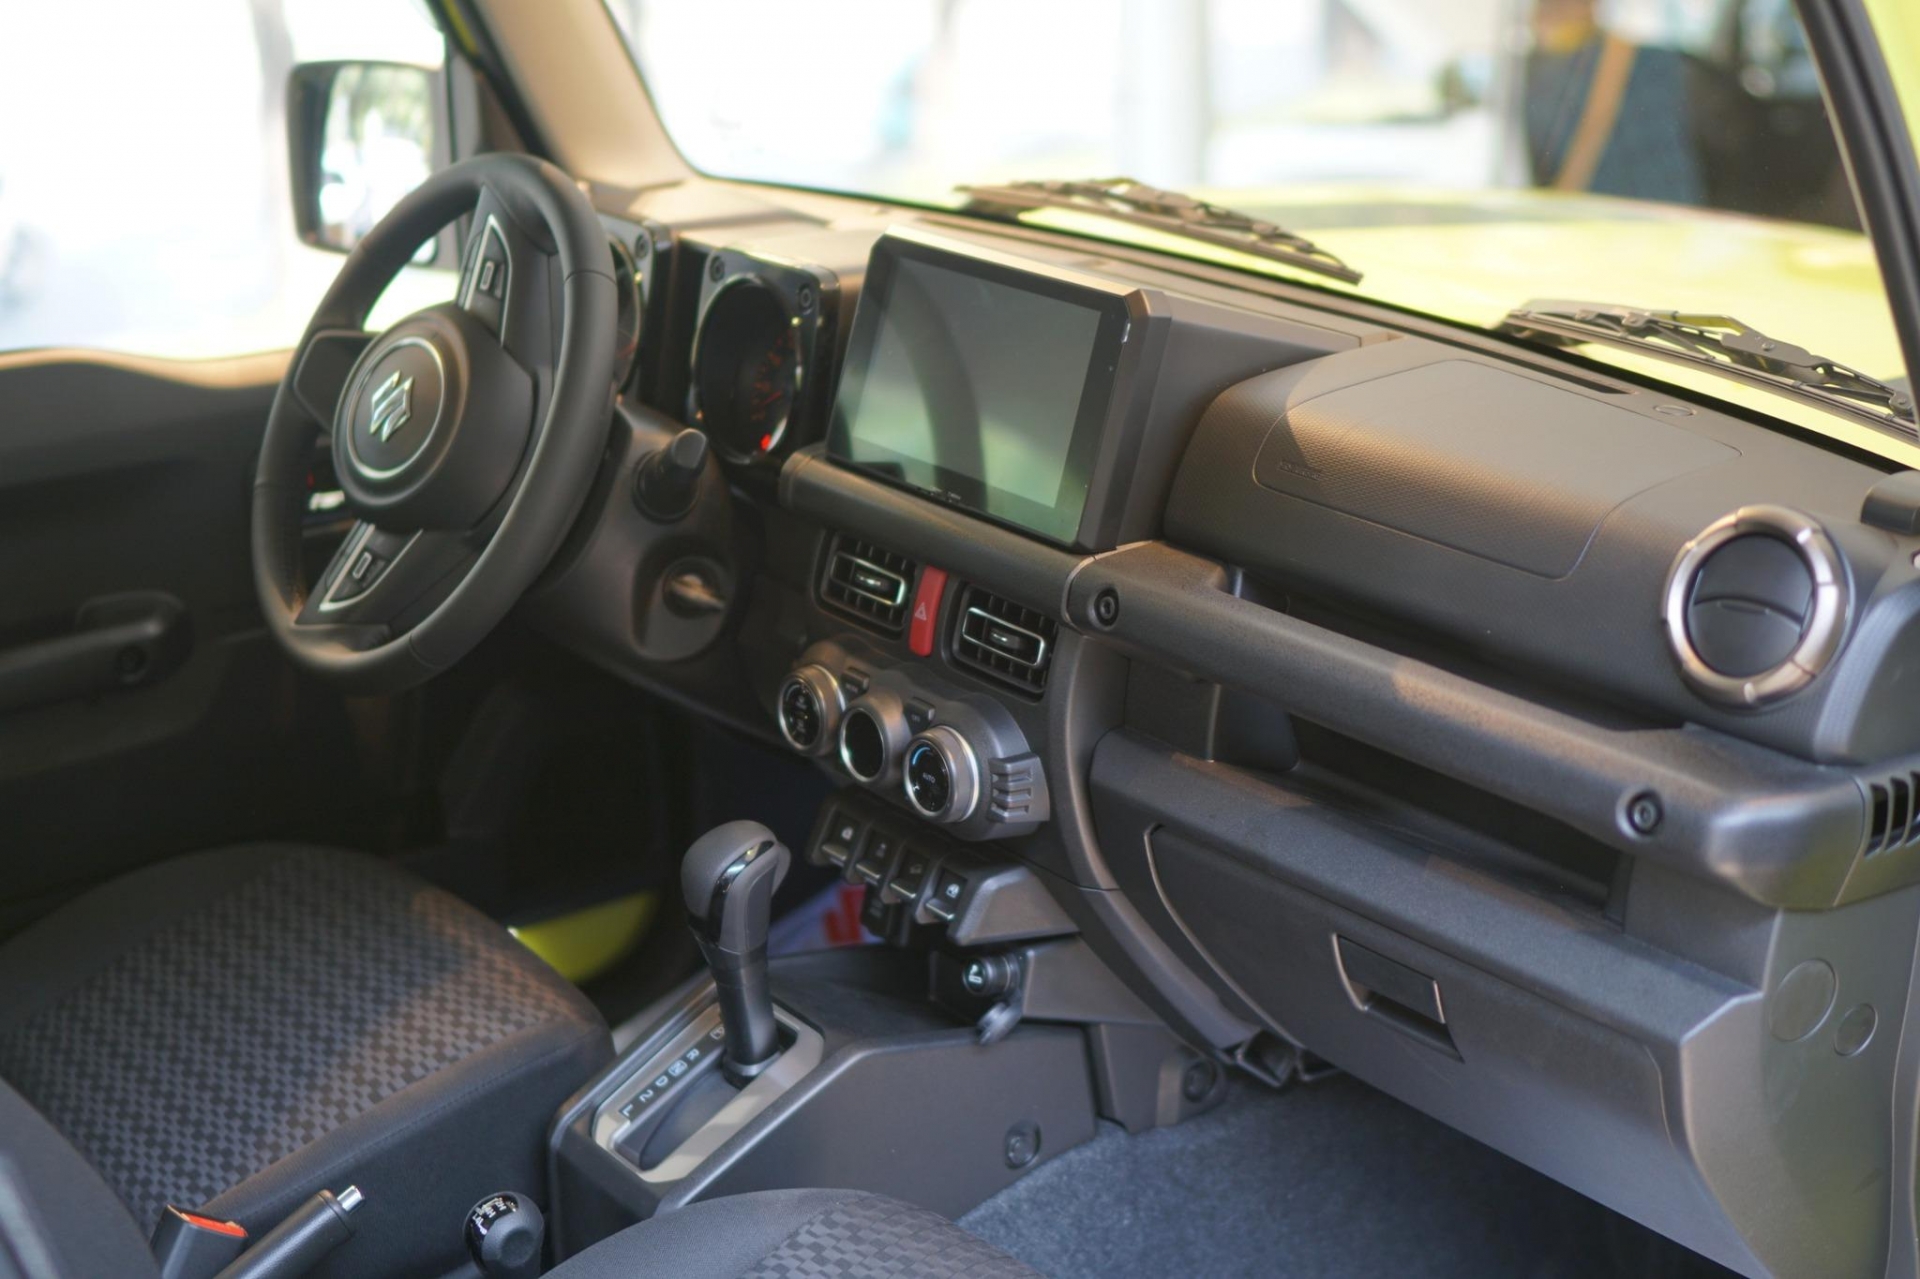 Mục sở thị ‘xe chơi’ Suzuki Jimny tại đại lý Việt Nam, giá chưa tới 800 triệu đồng 440441